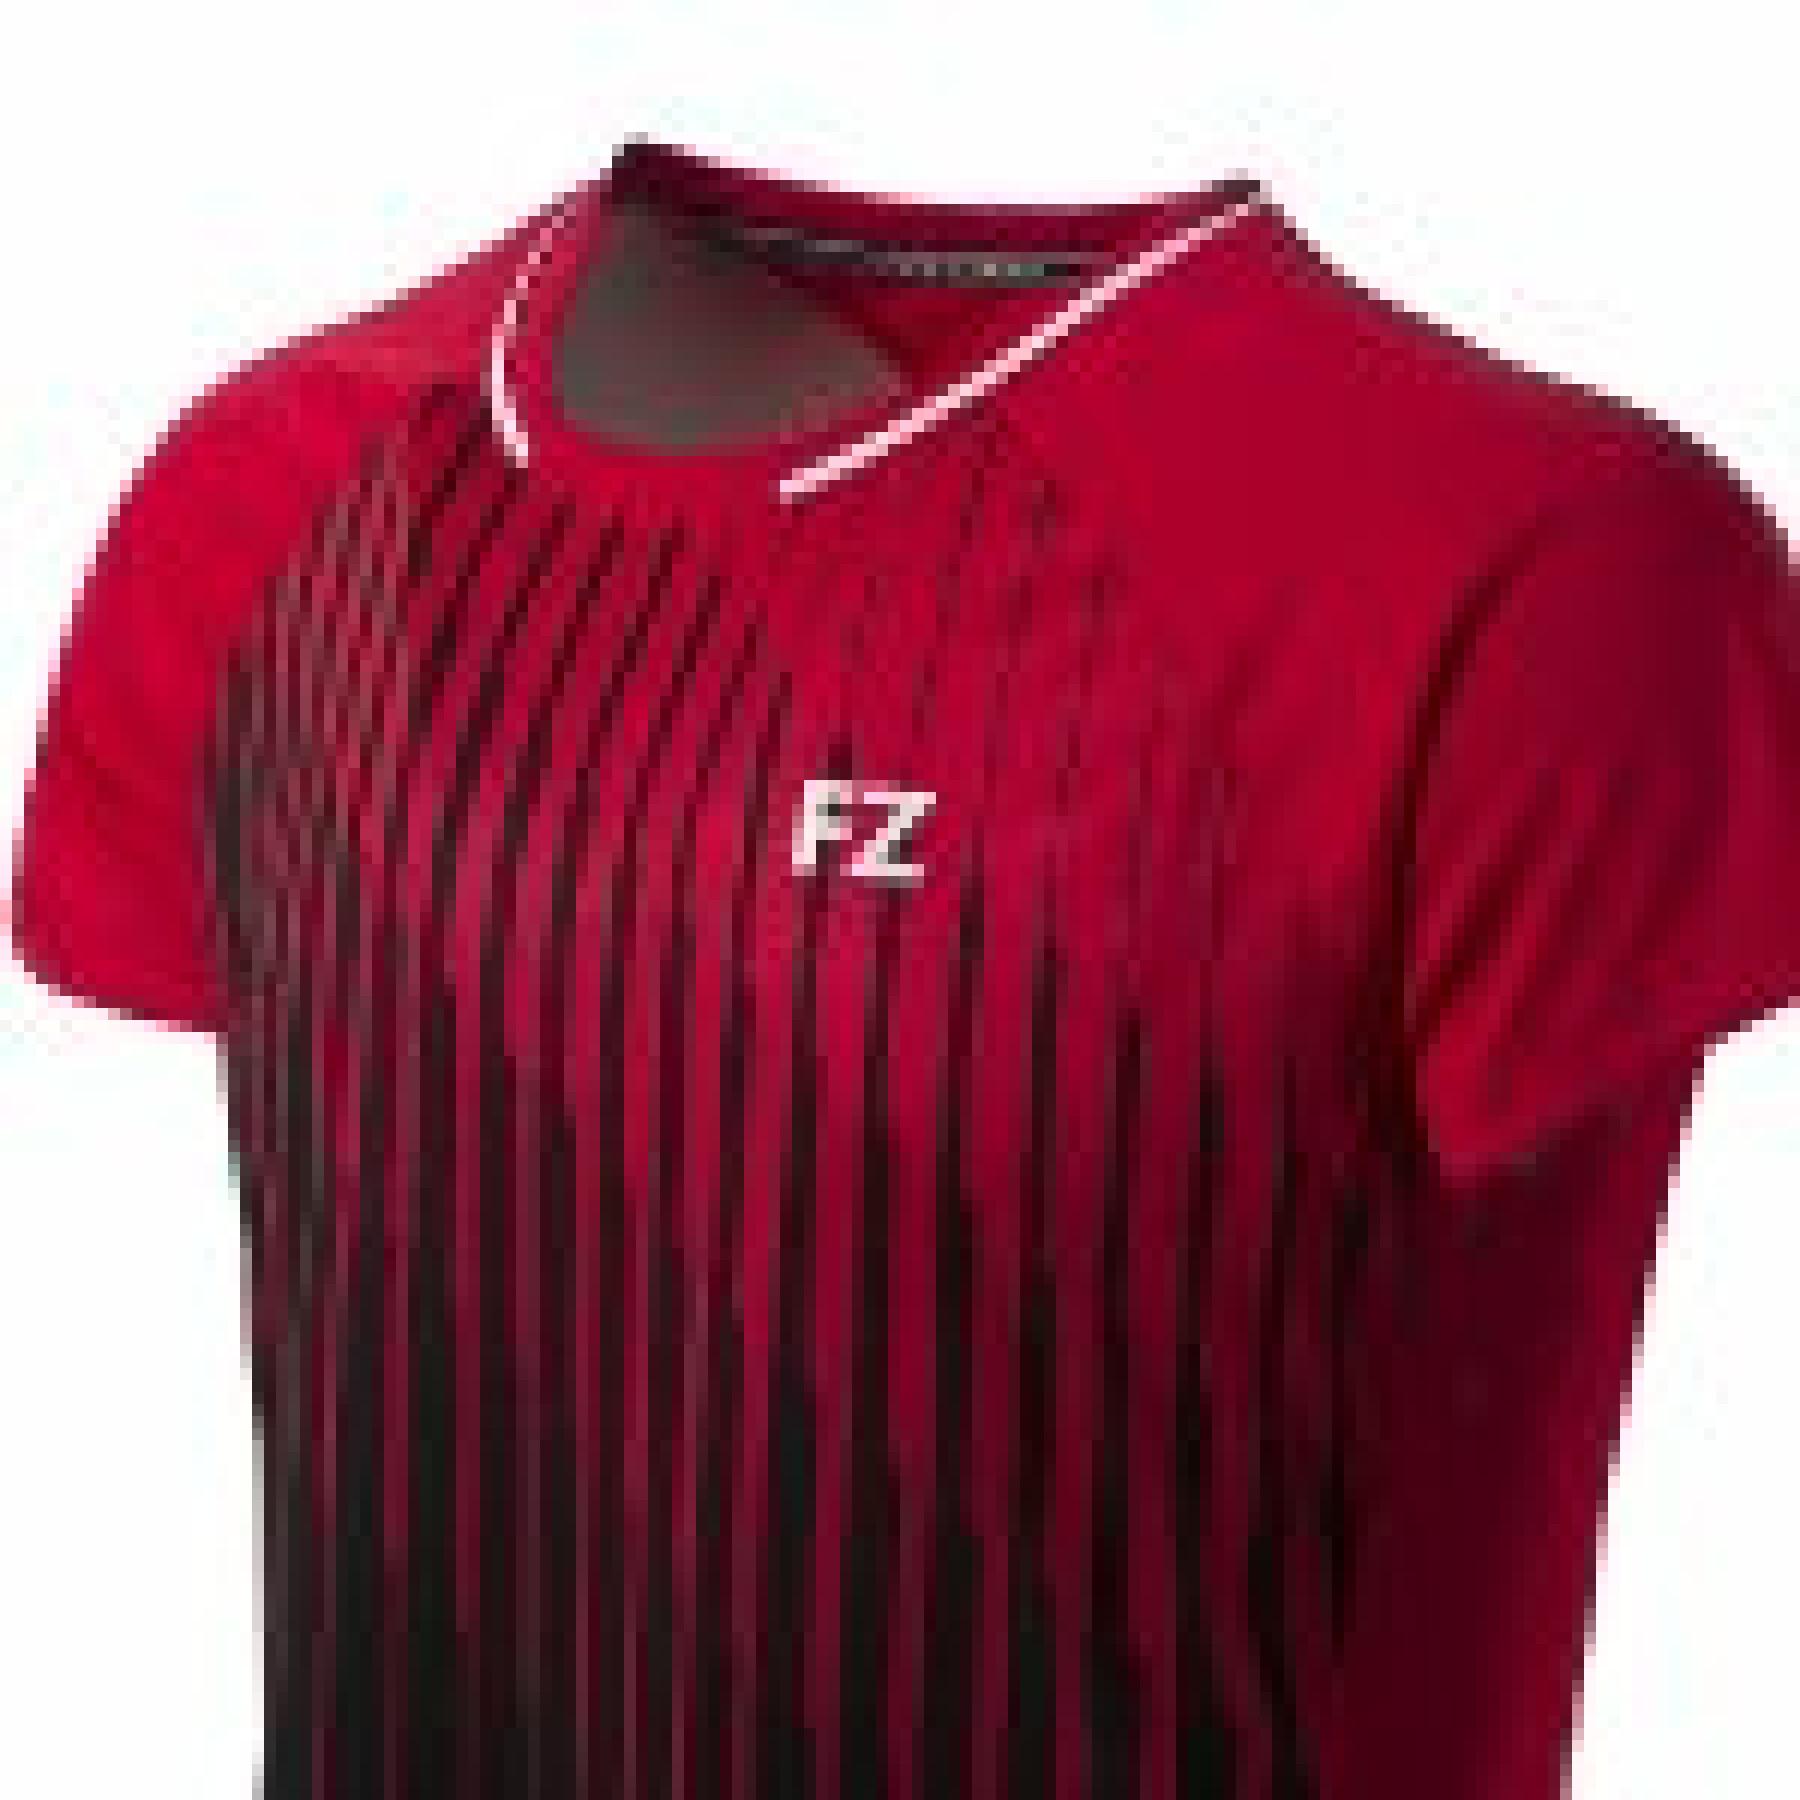 Koszulka męska FZ Forza Sedano M S/S